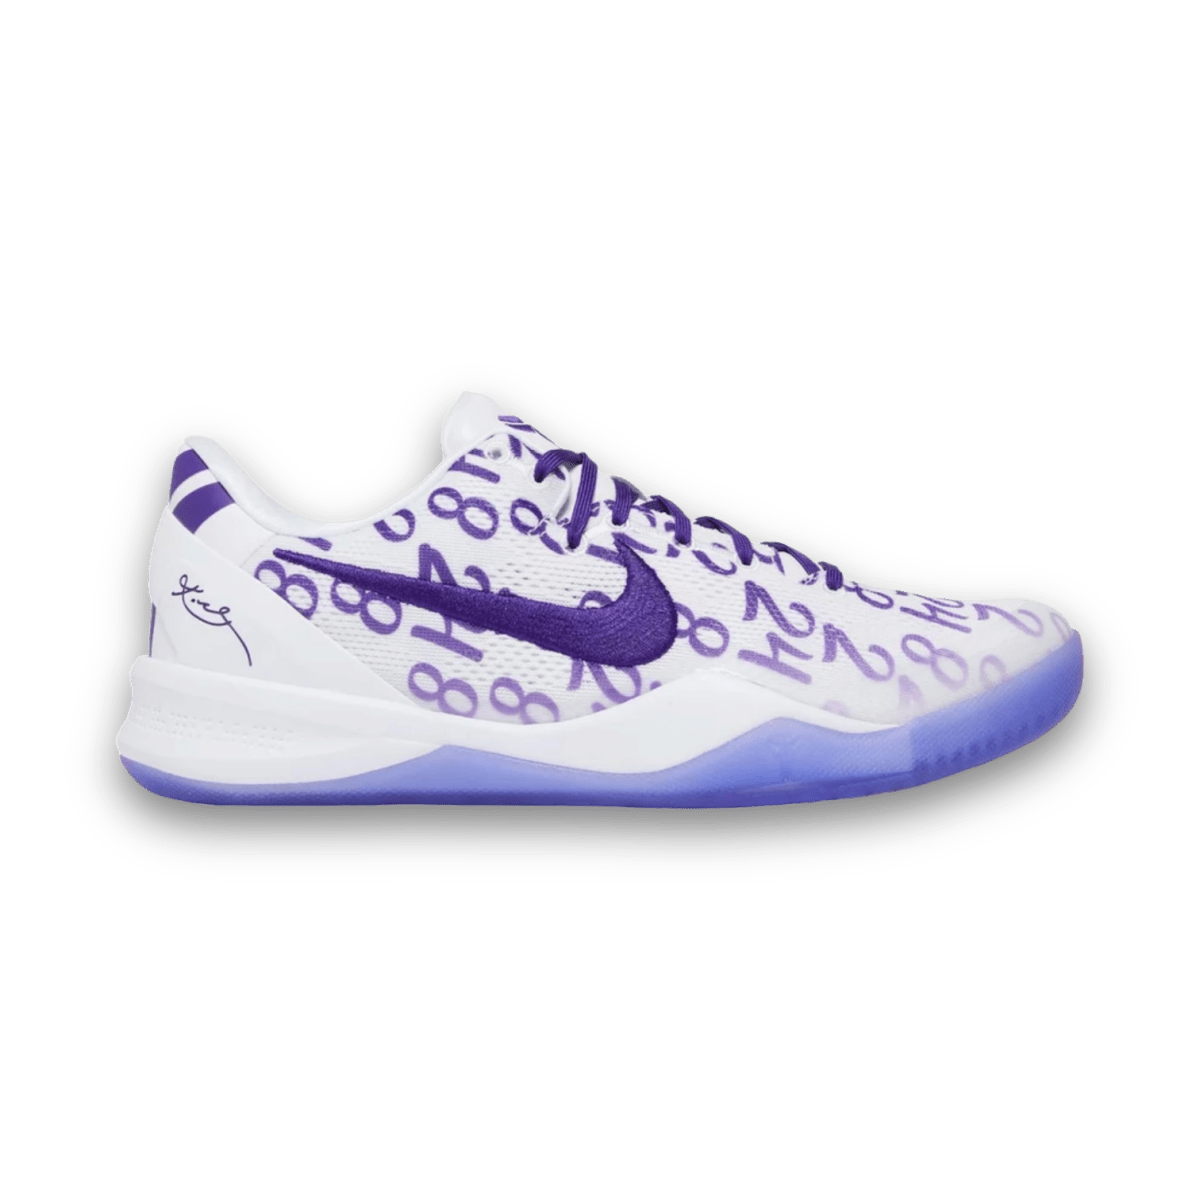 Kobe 8 Protro 'Court Purple' - Low Sneaker - Jawns on Fire Sneakers & Streetwear